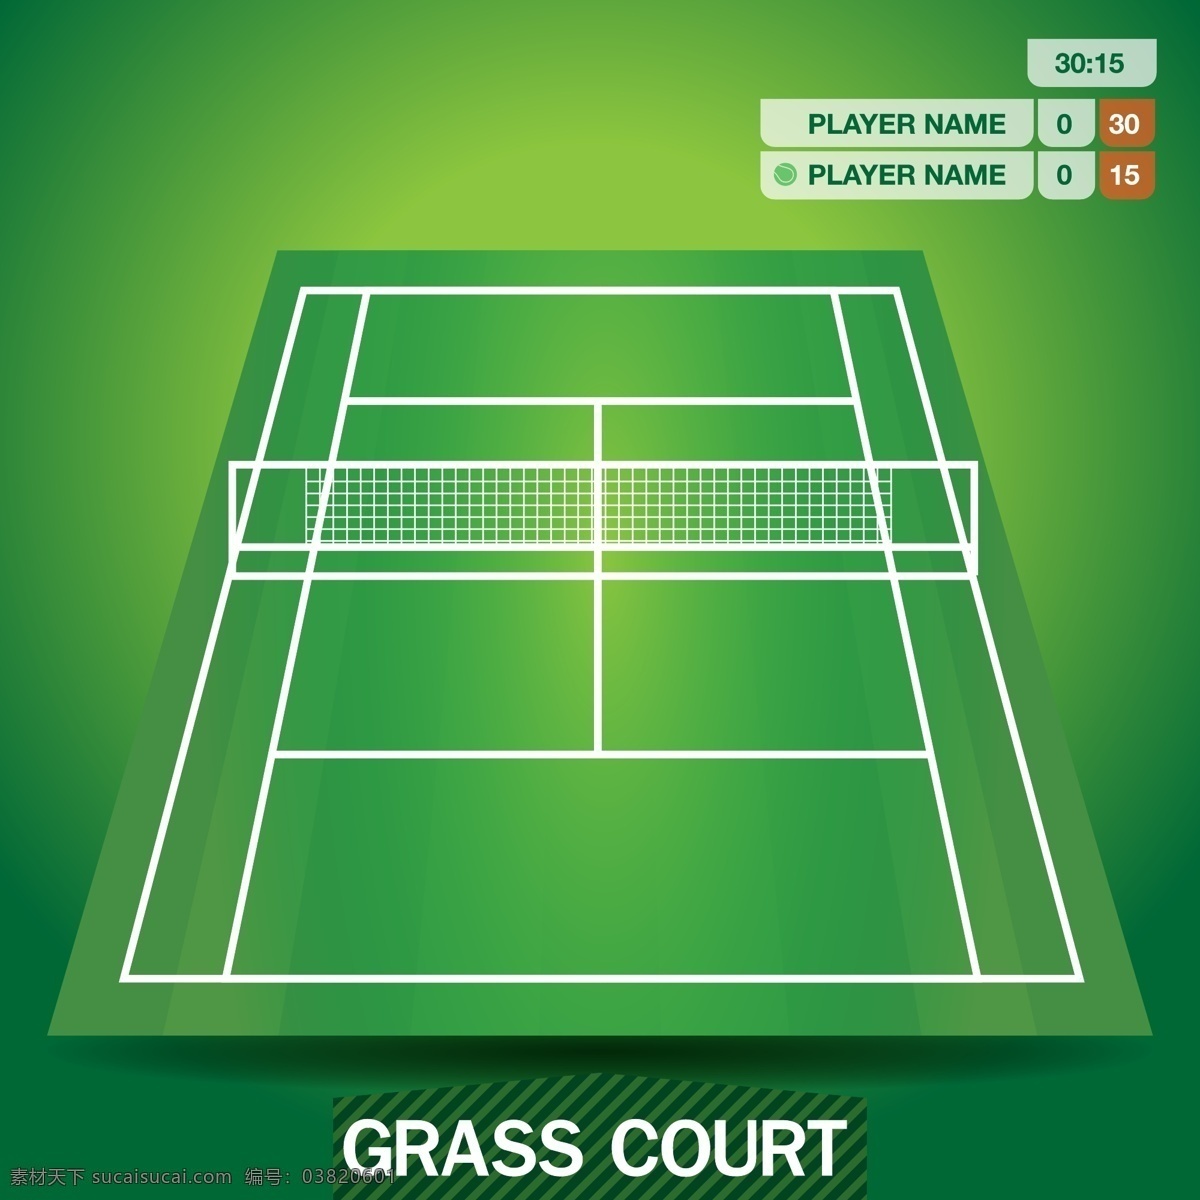 网球场 矢量 图形 矢量图形 自由矢量 运动 模板线 运动图形 布局 比赛 项目